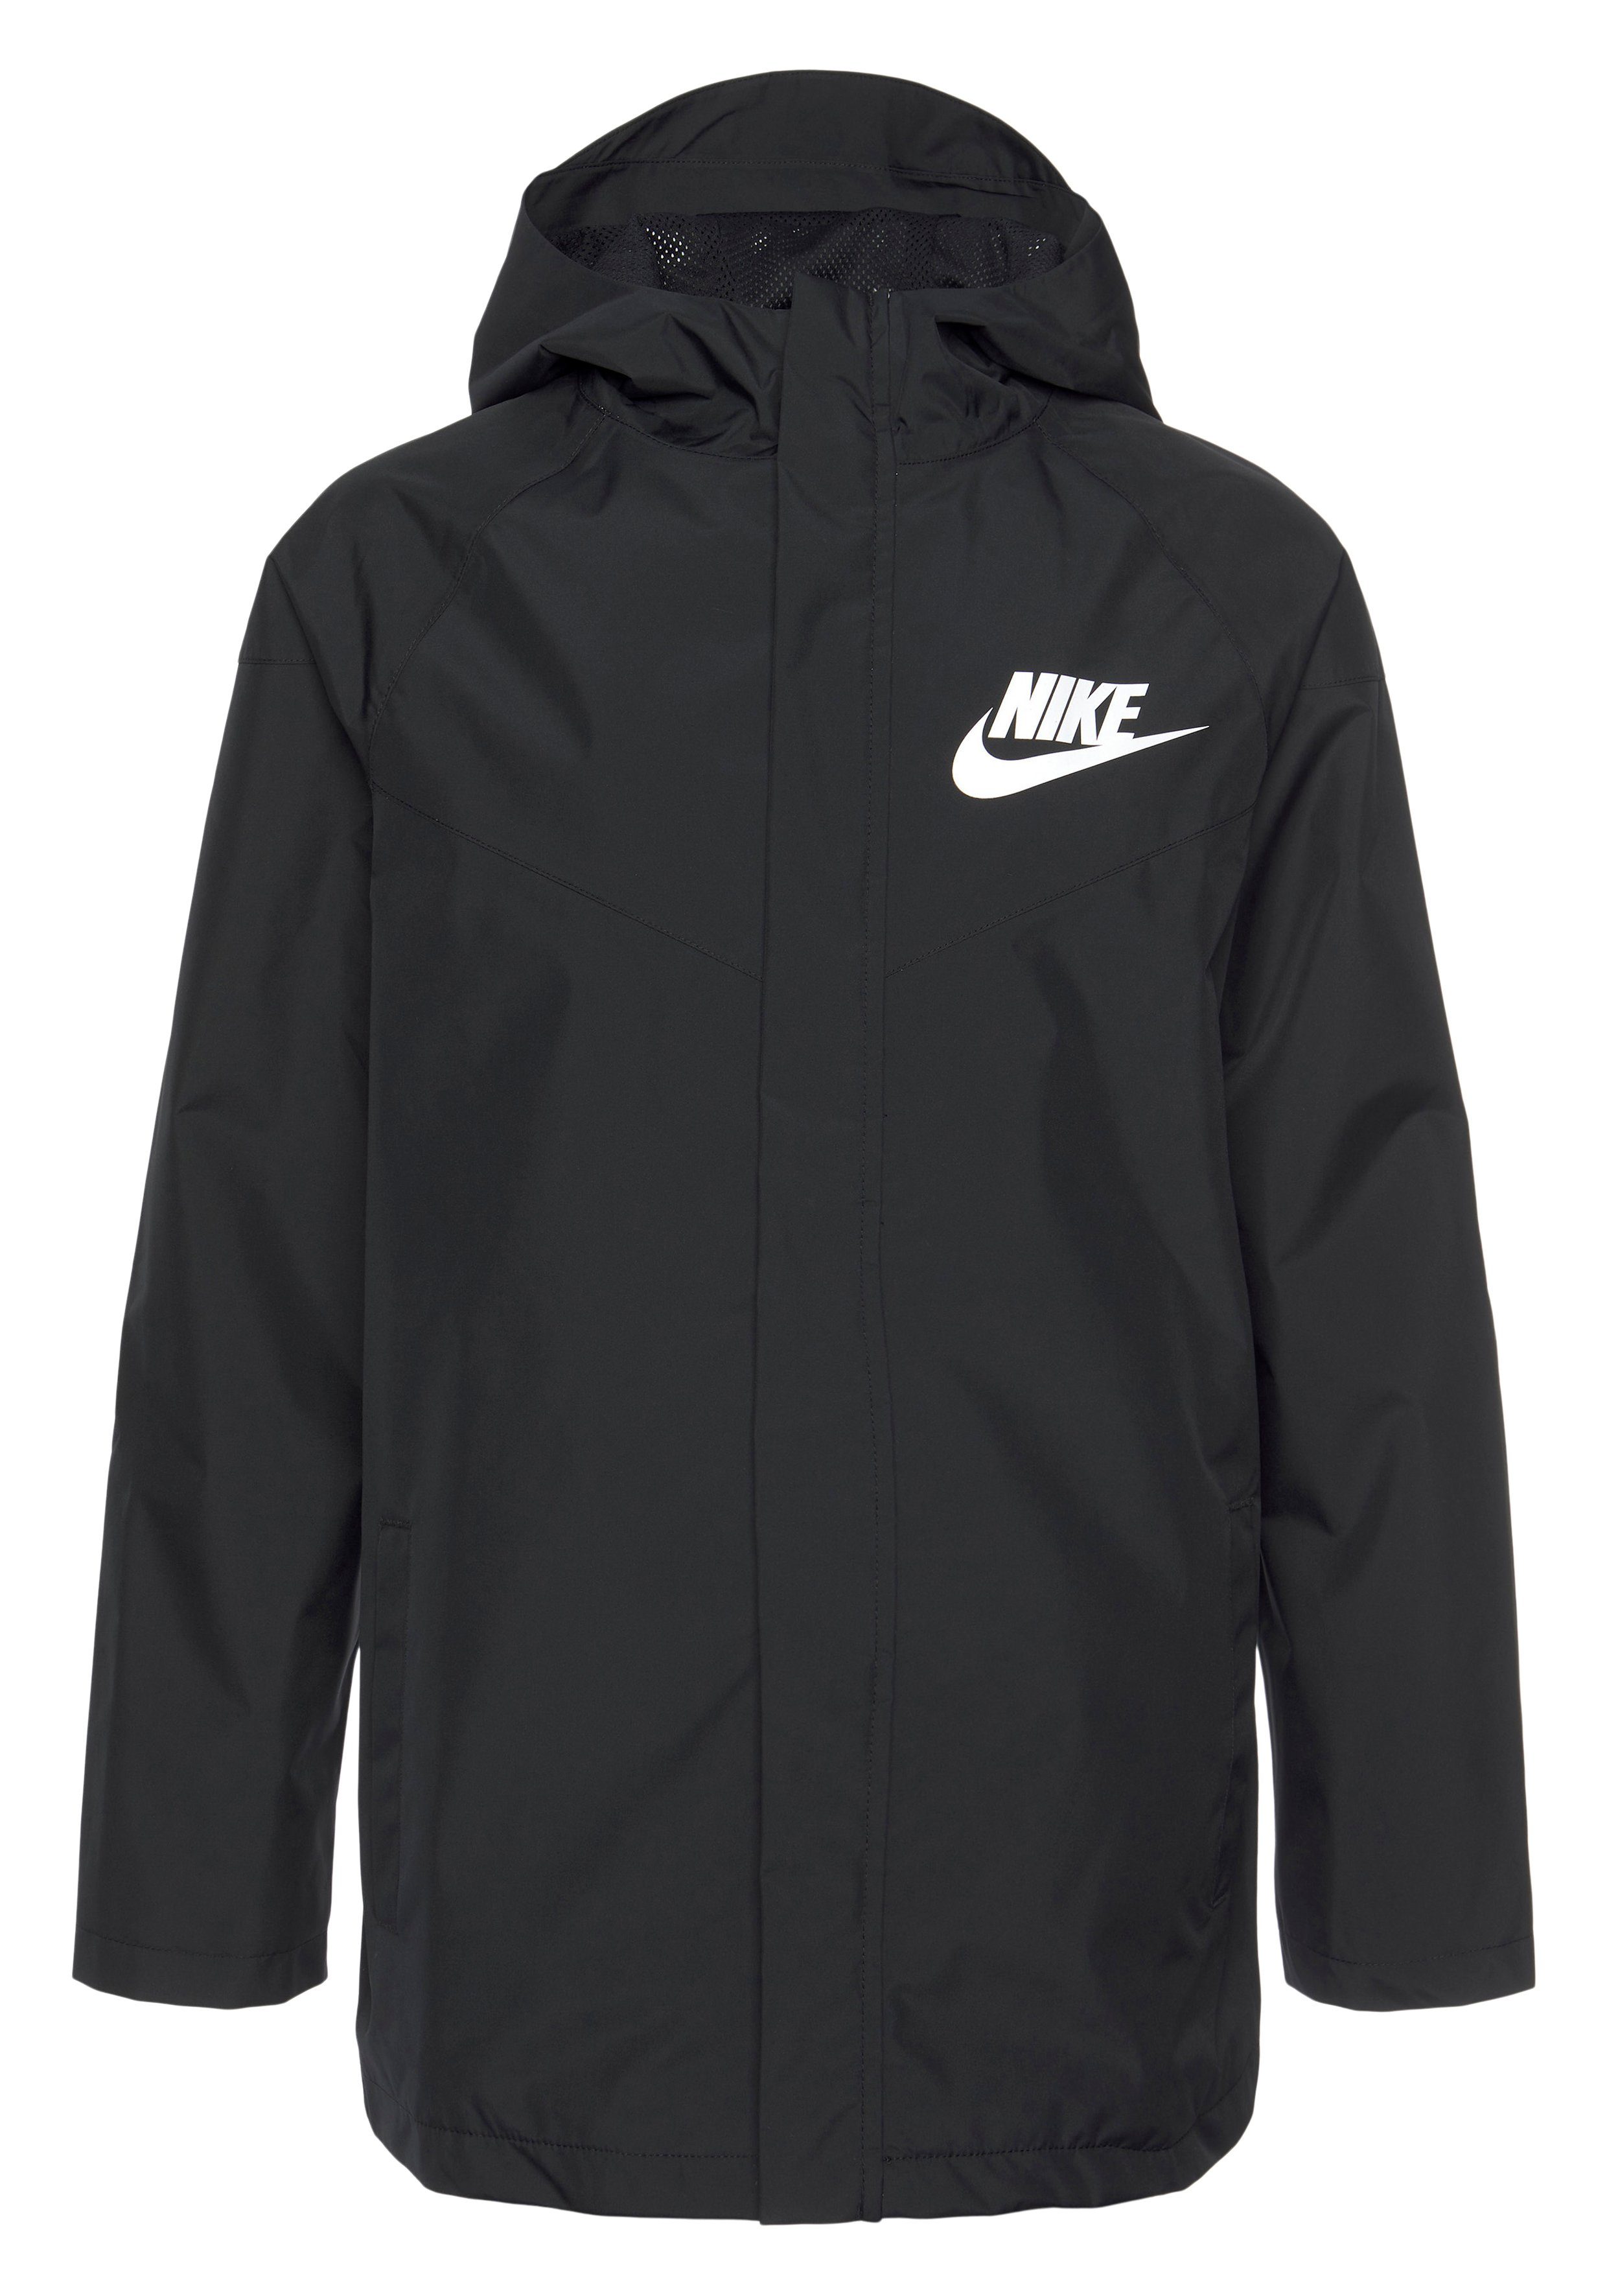 Nike BLACK/BLACK/WHITE Storm-FIT Windrunner Kids' (Boys) Jacket Sportswear Big Windbreaker